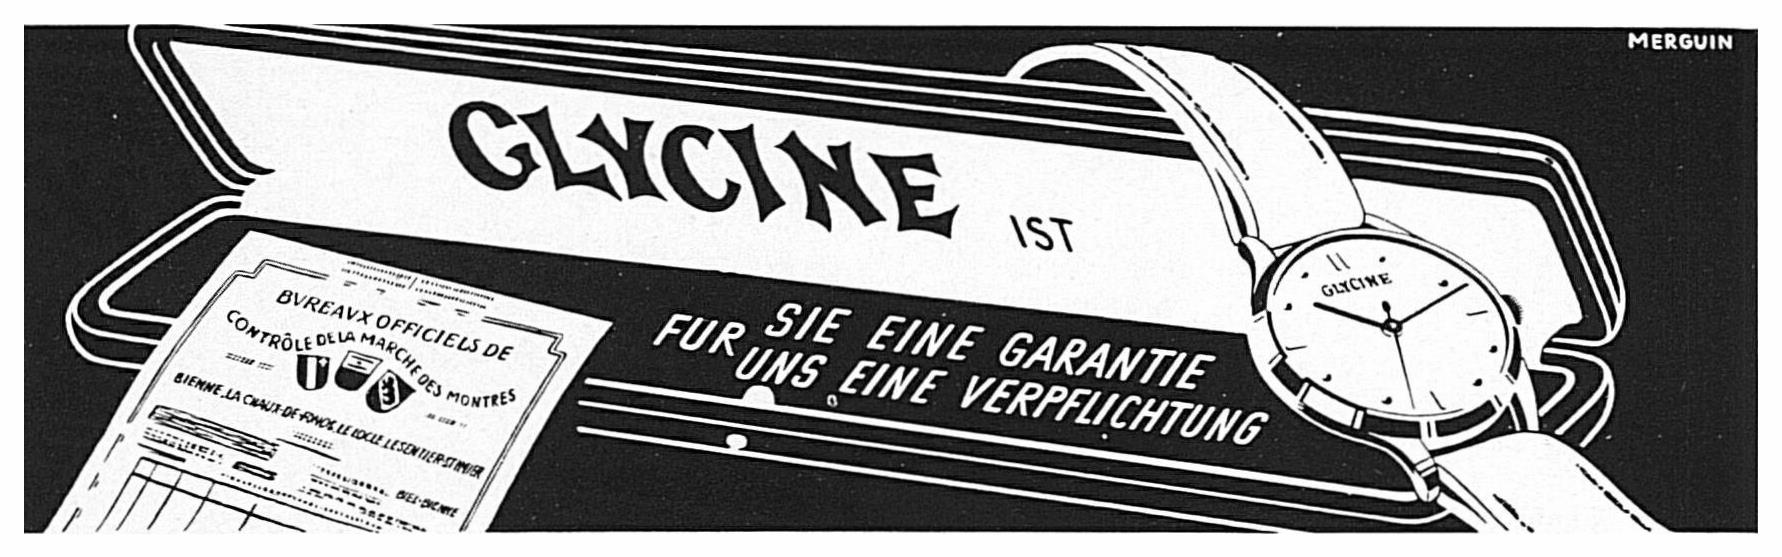 Glycine 1946 288.jpg